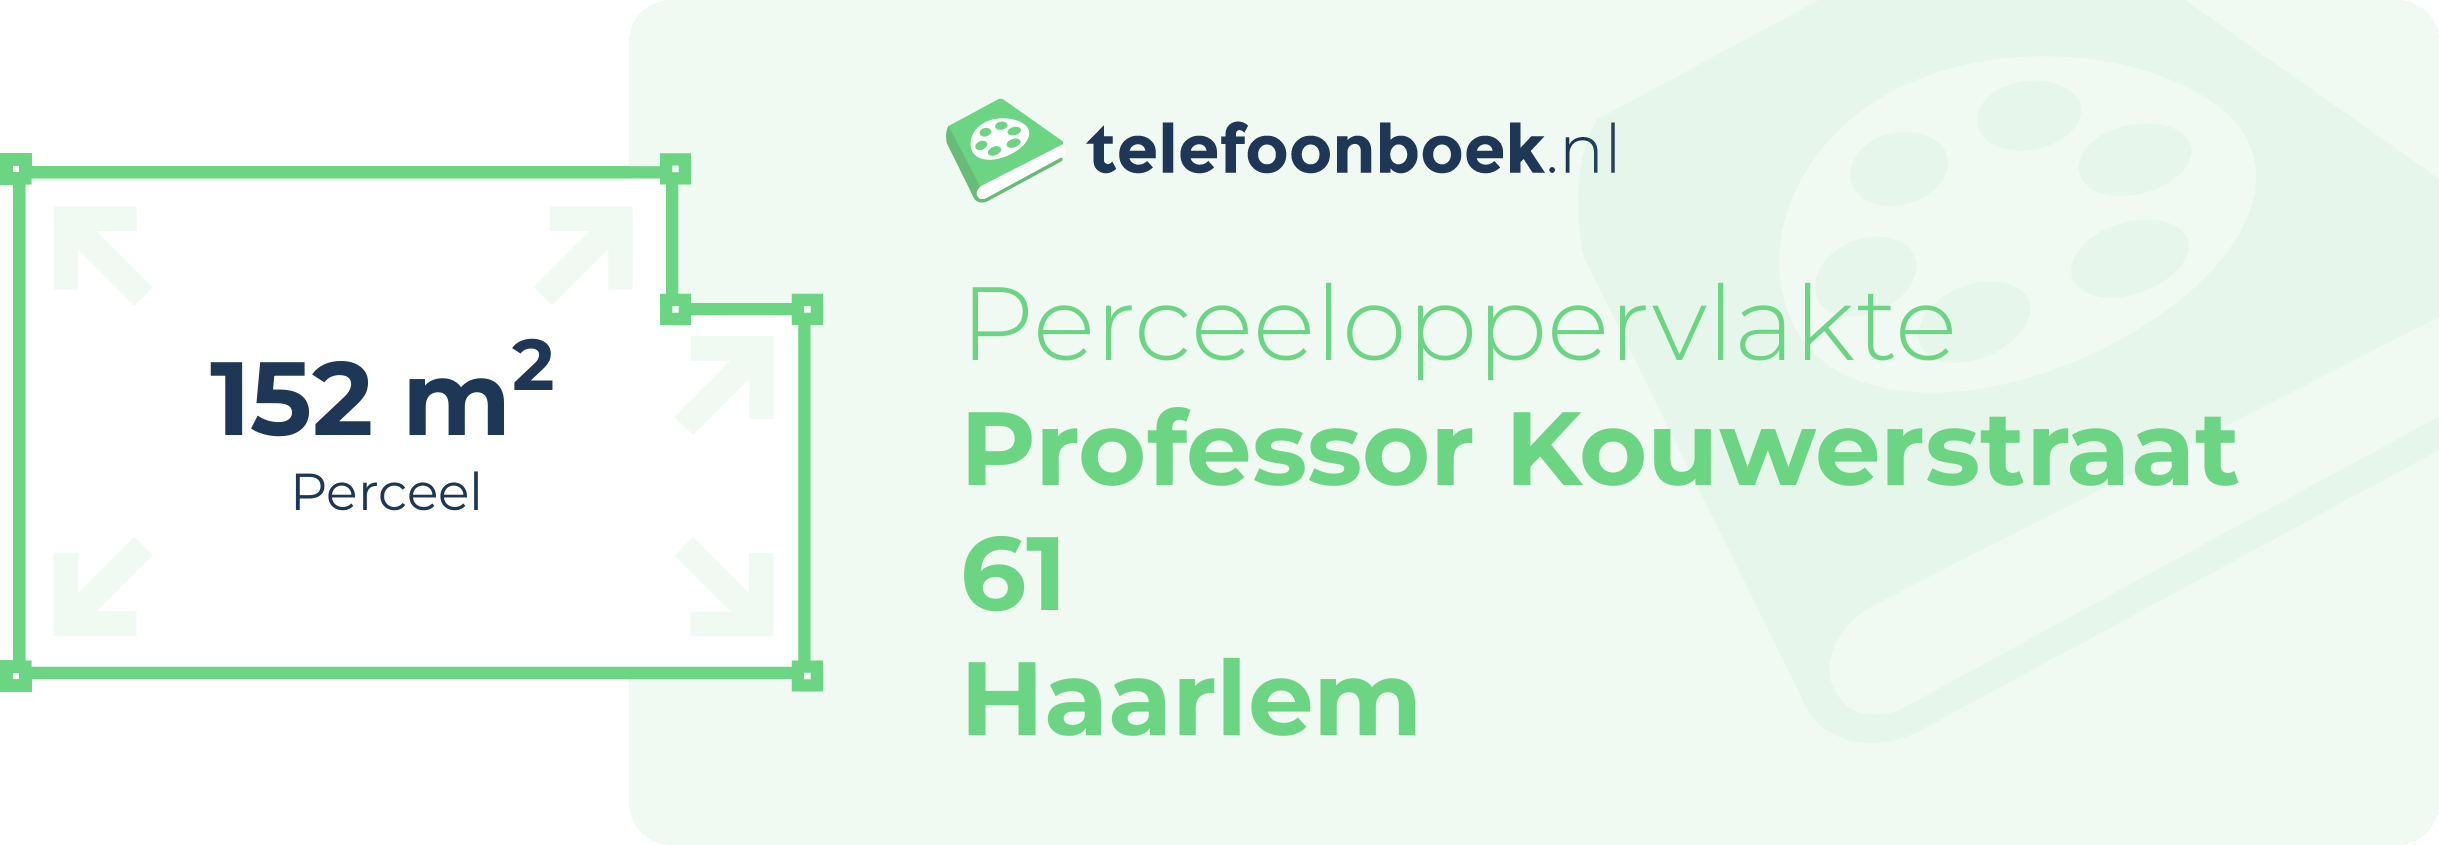 Perceeloppervlakte Professor Kouwerstraat 61 Haarlem